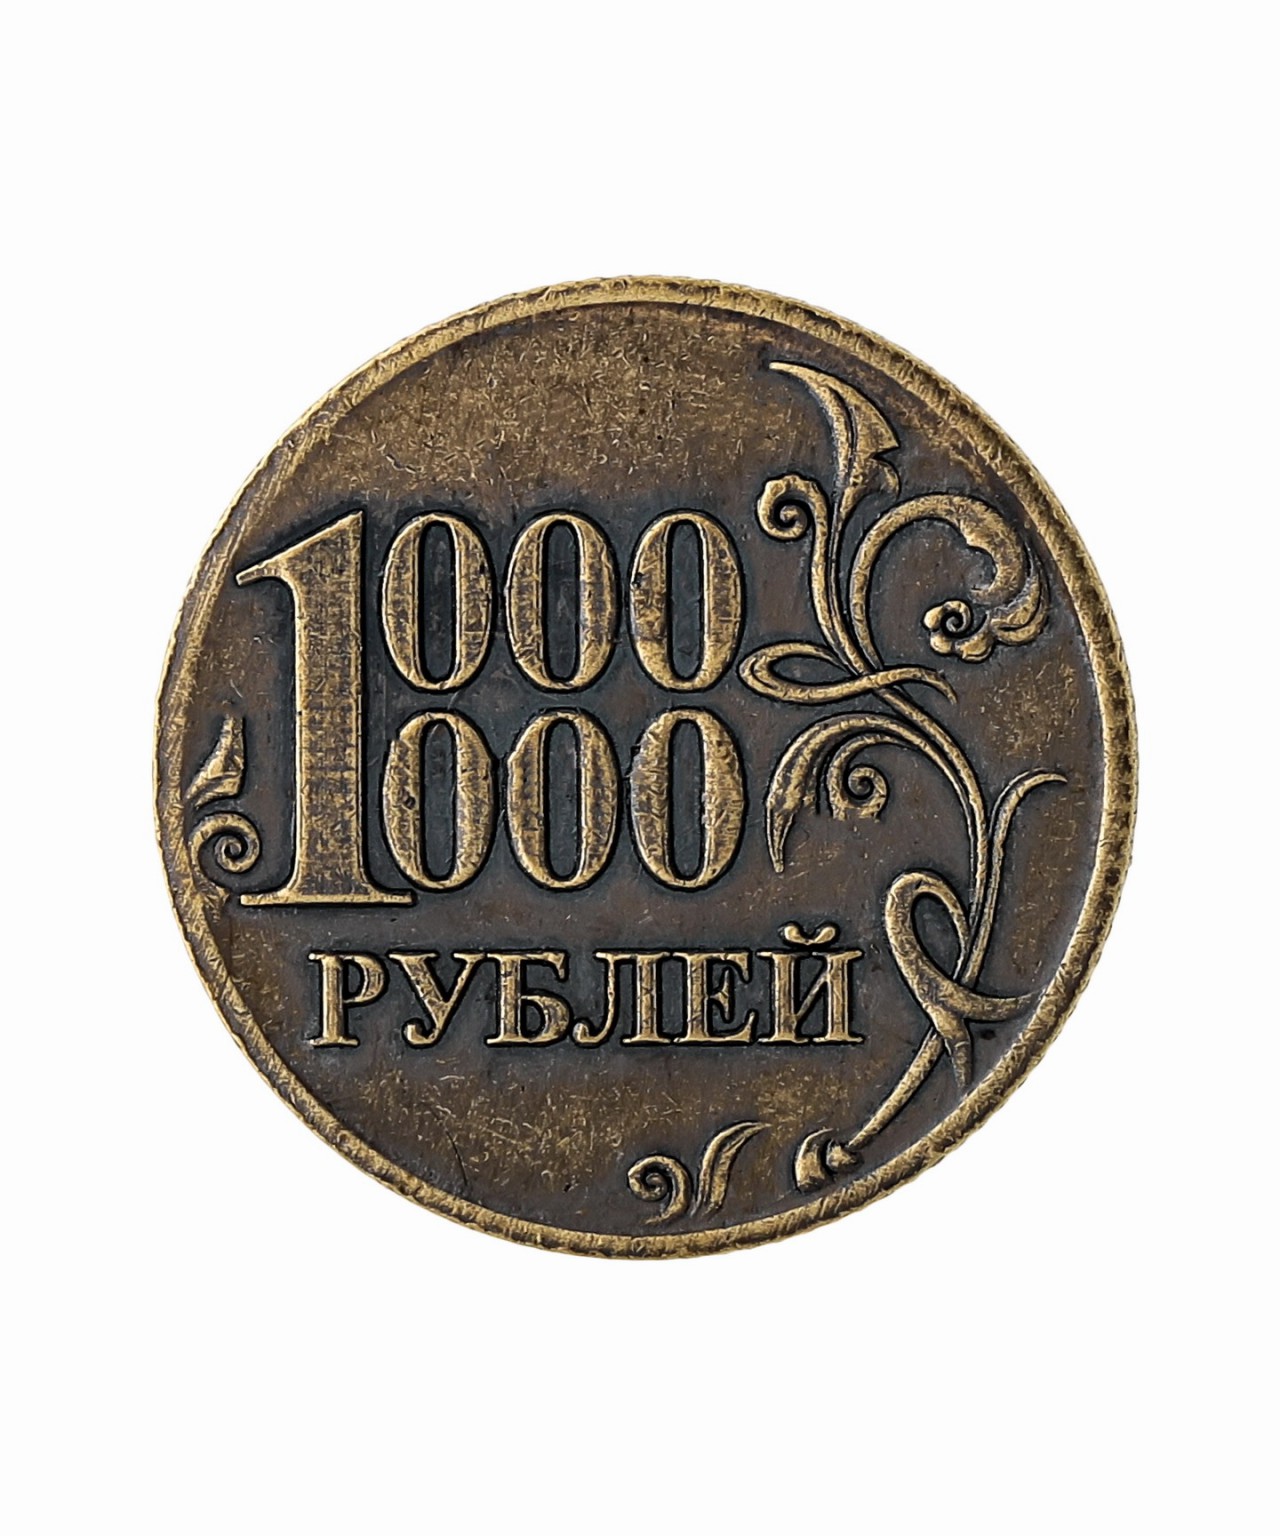 300 00 рублей. Монета ноль рублей. Мелнета 0 рублей. Монета 0 рублей. Монета номиналом 0 рублей.